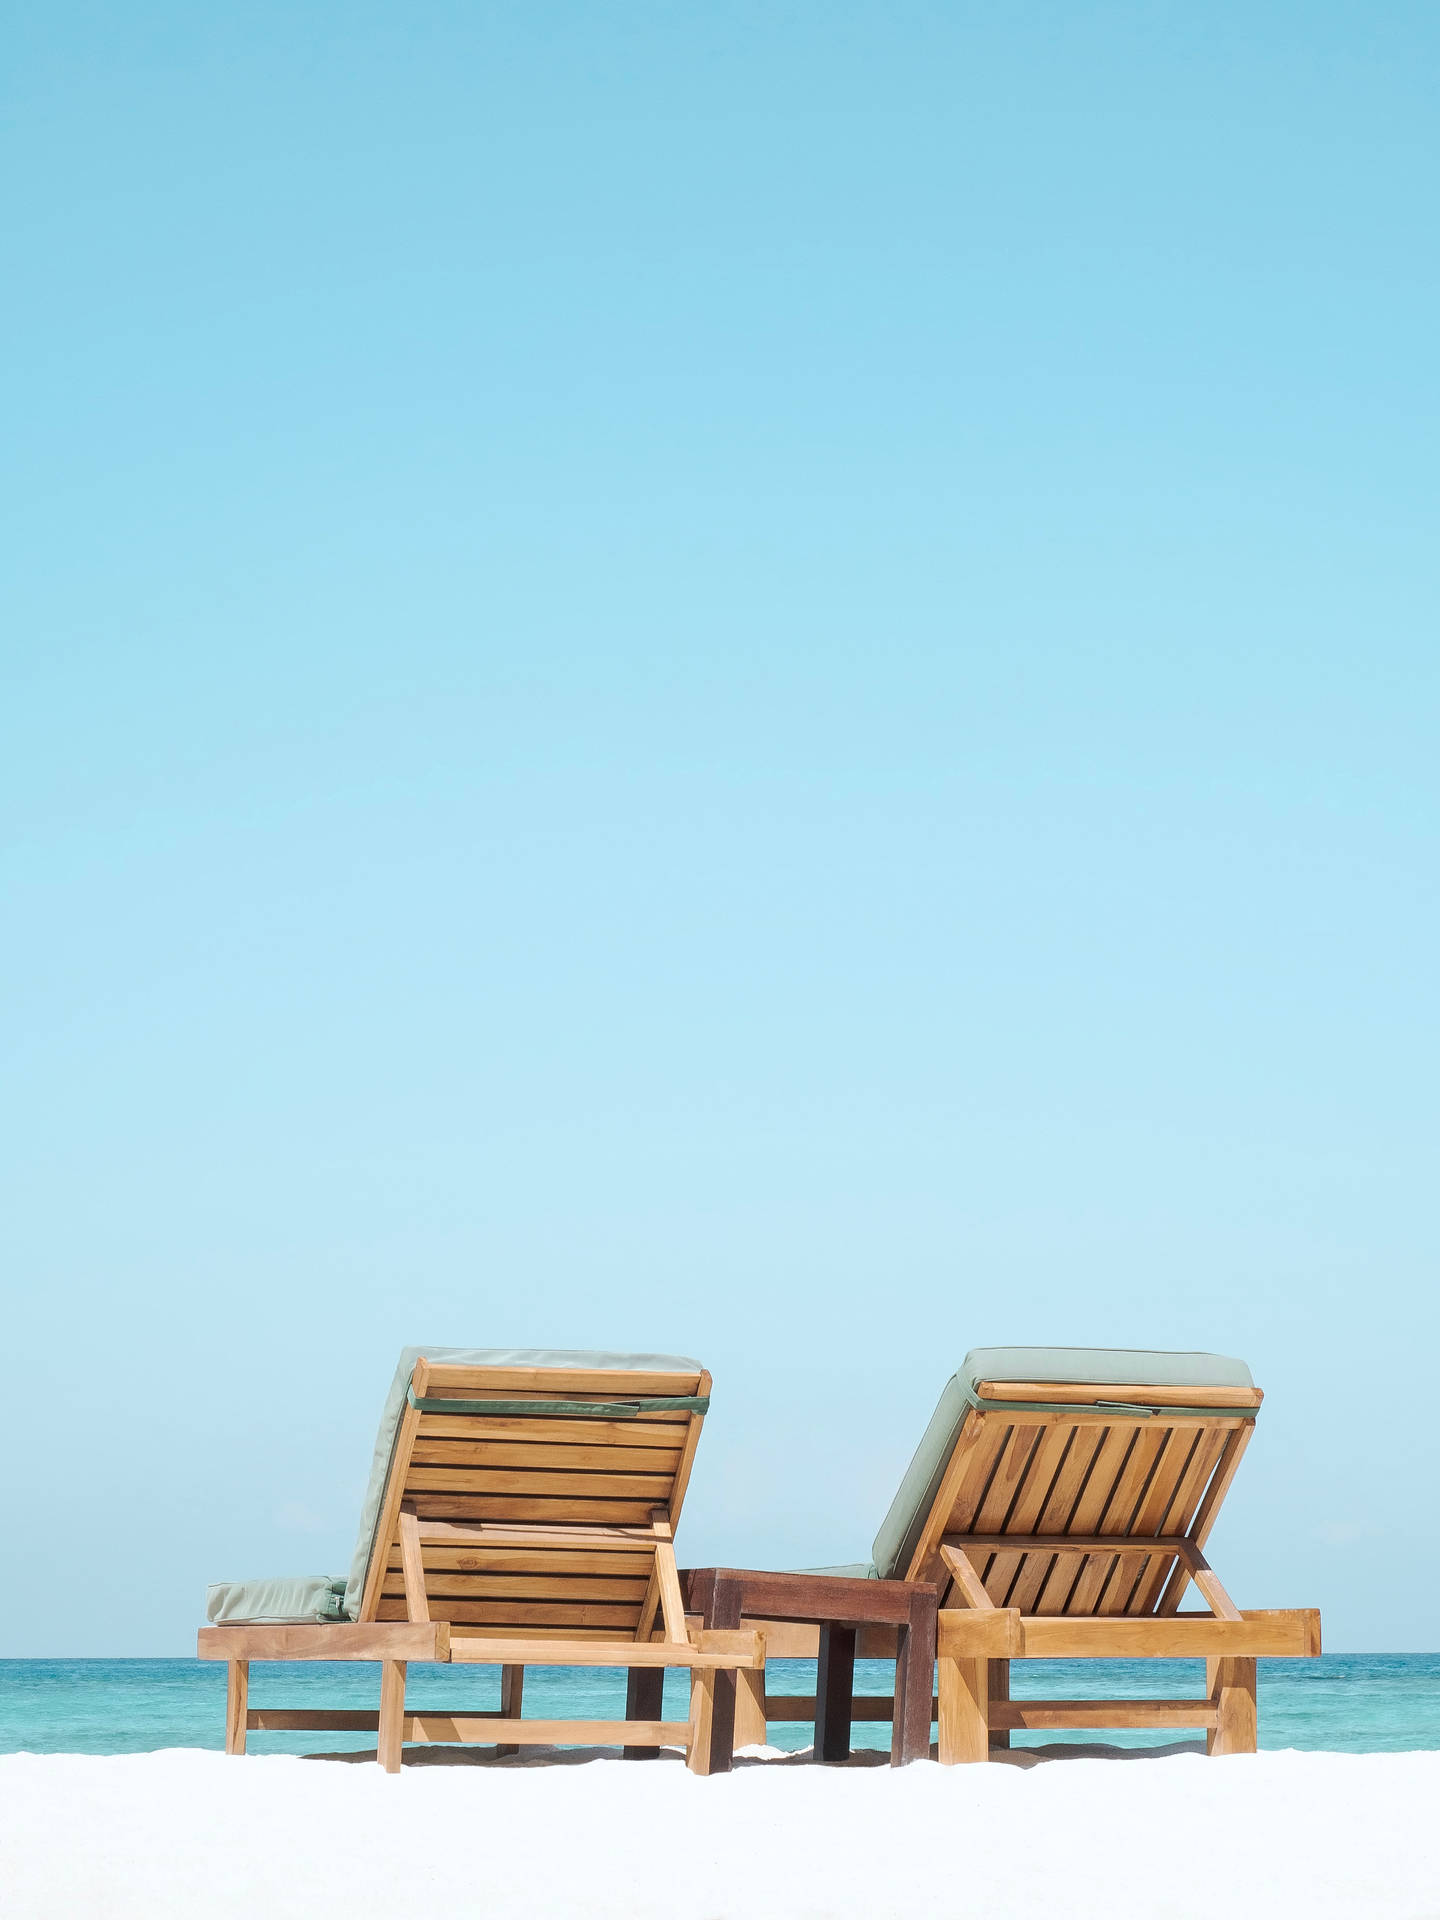 Chill Wooden Beach Loungers Wallpaper